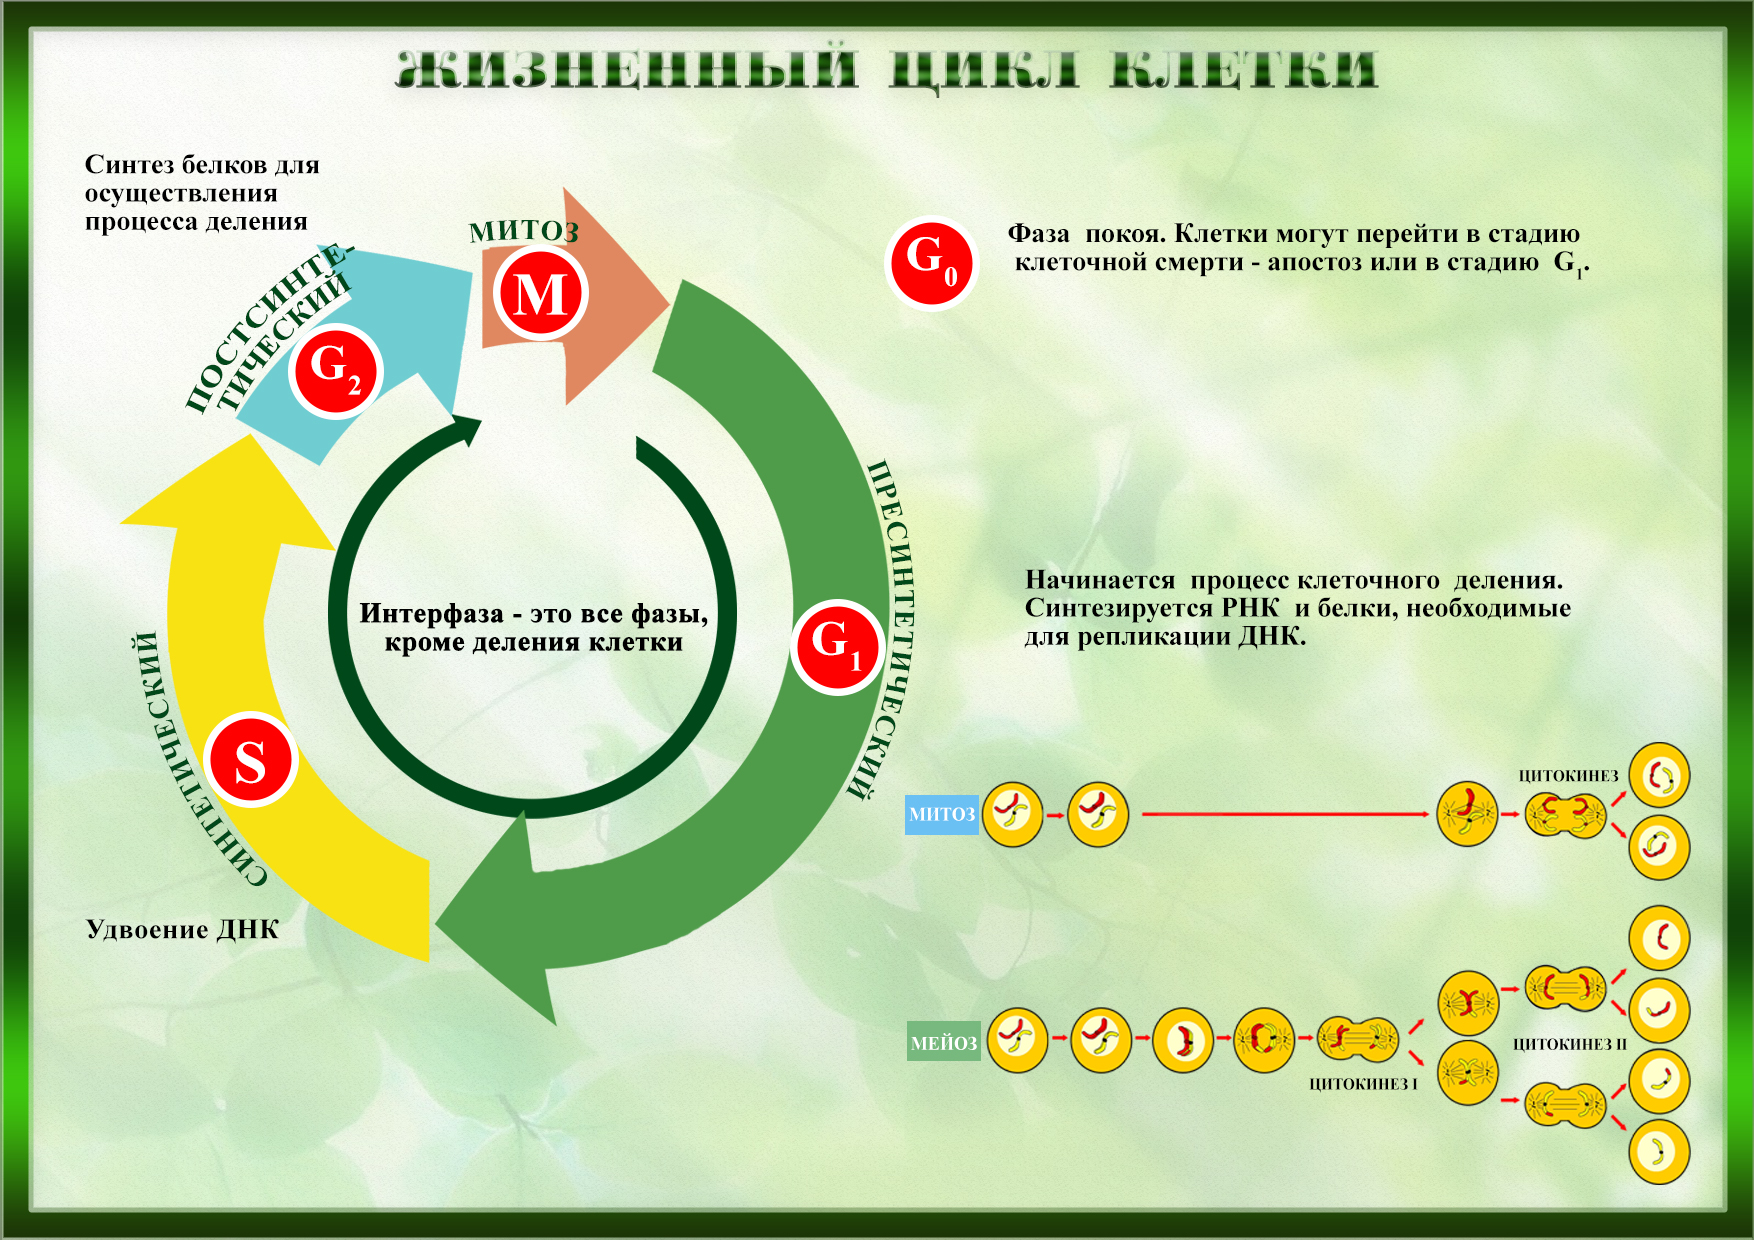 6 жизненный цикл клетки. Жизненный клеточный цикл. Жизненный цикл клетки. Жизненный цикл растительной клетки. Фазы клеточного цикла.